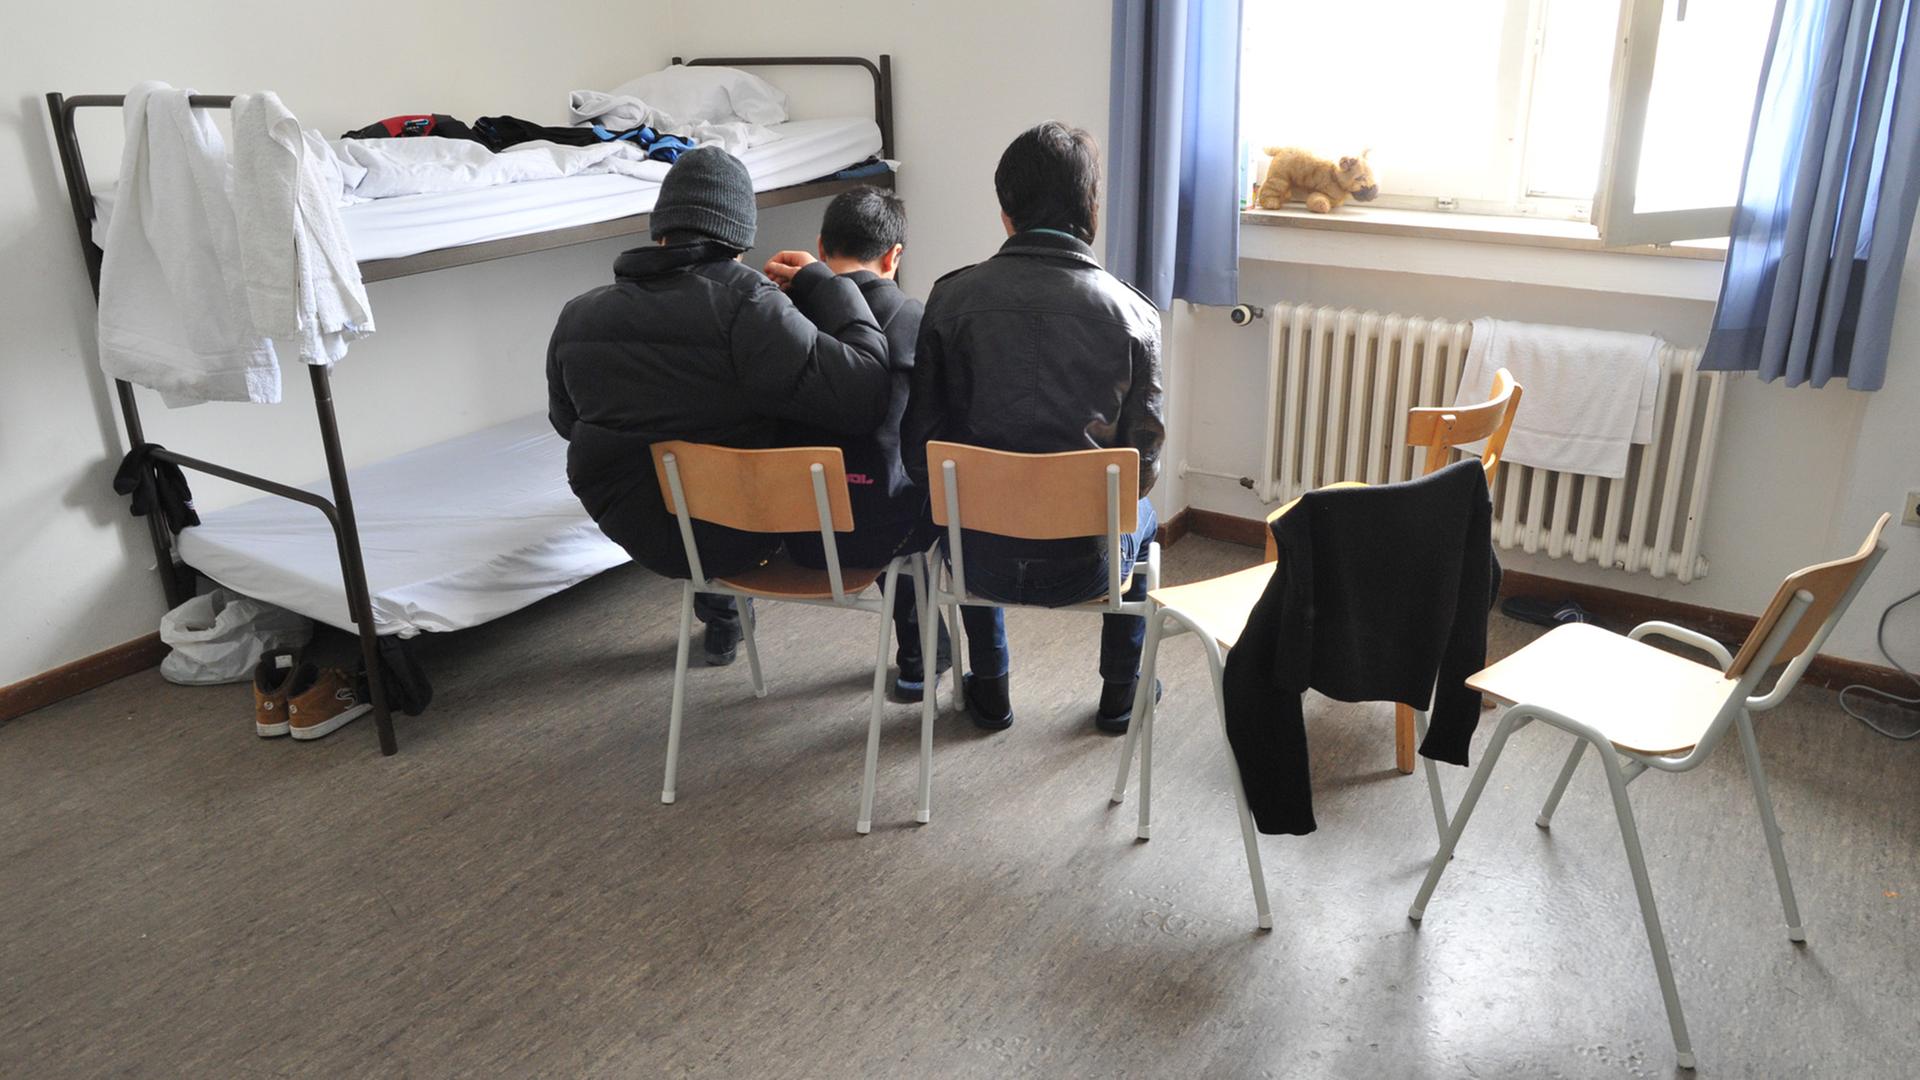 Jugendliche, sogenannte "unbegleitete minderjährige Flüchtlinge (umF)" halten in ihrem Zimmer eines Asylbewerberheims in München auf.